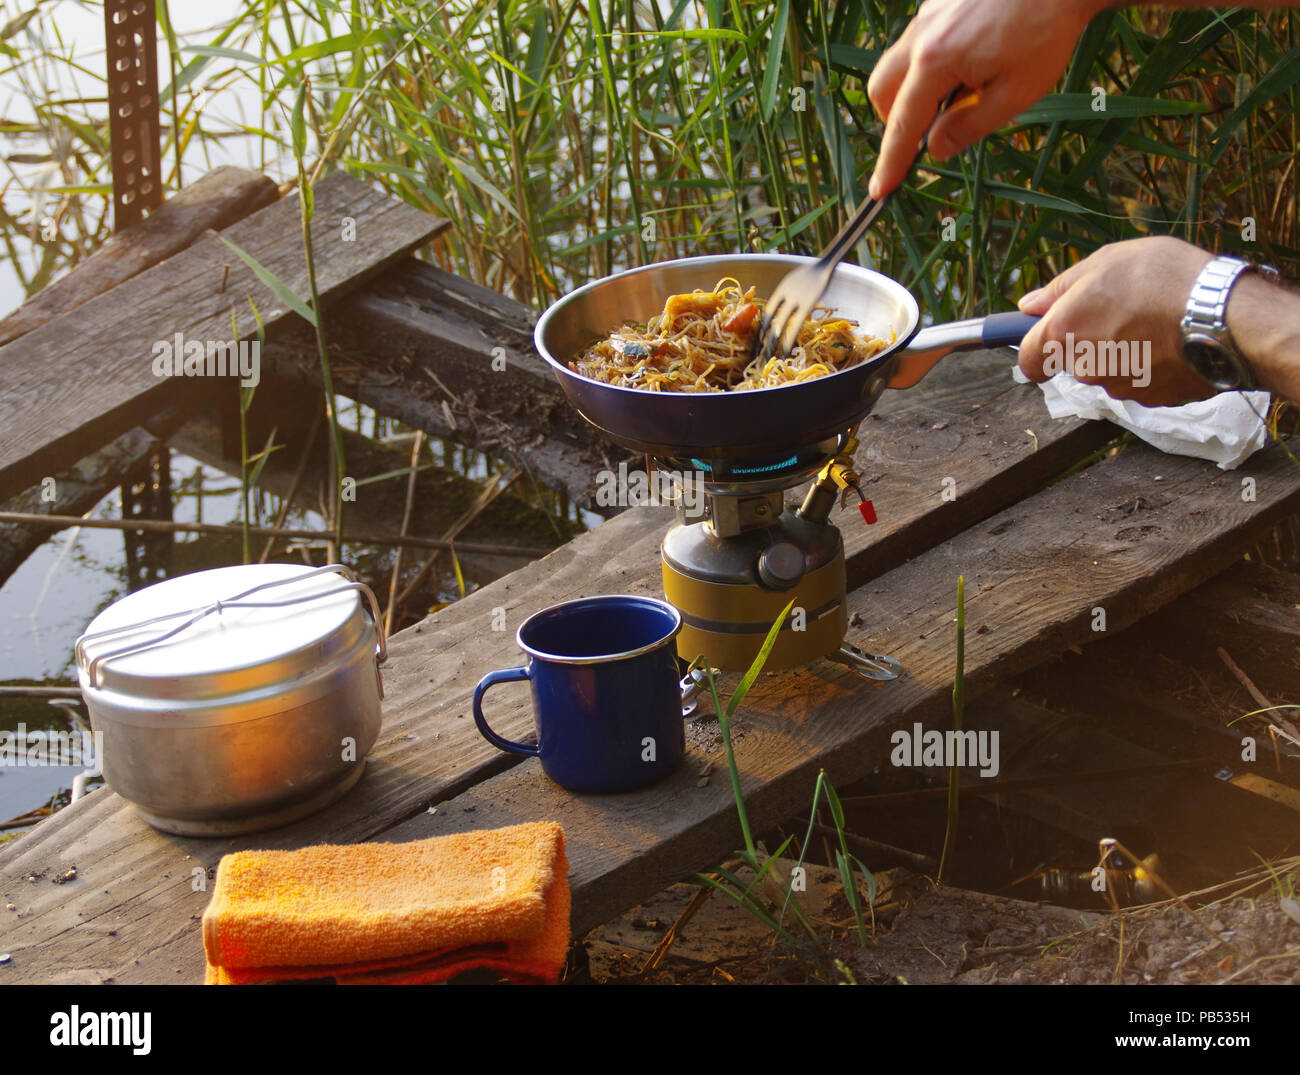 Camping Essen. Pasta auf Pan auf touristische Brand Herd. Camp Kochen am Ufer des Sees. Stockfoto